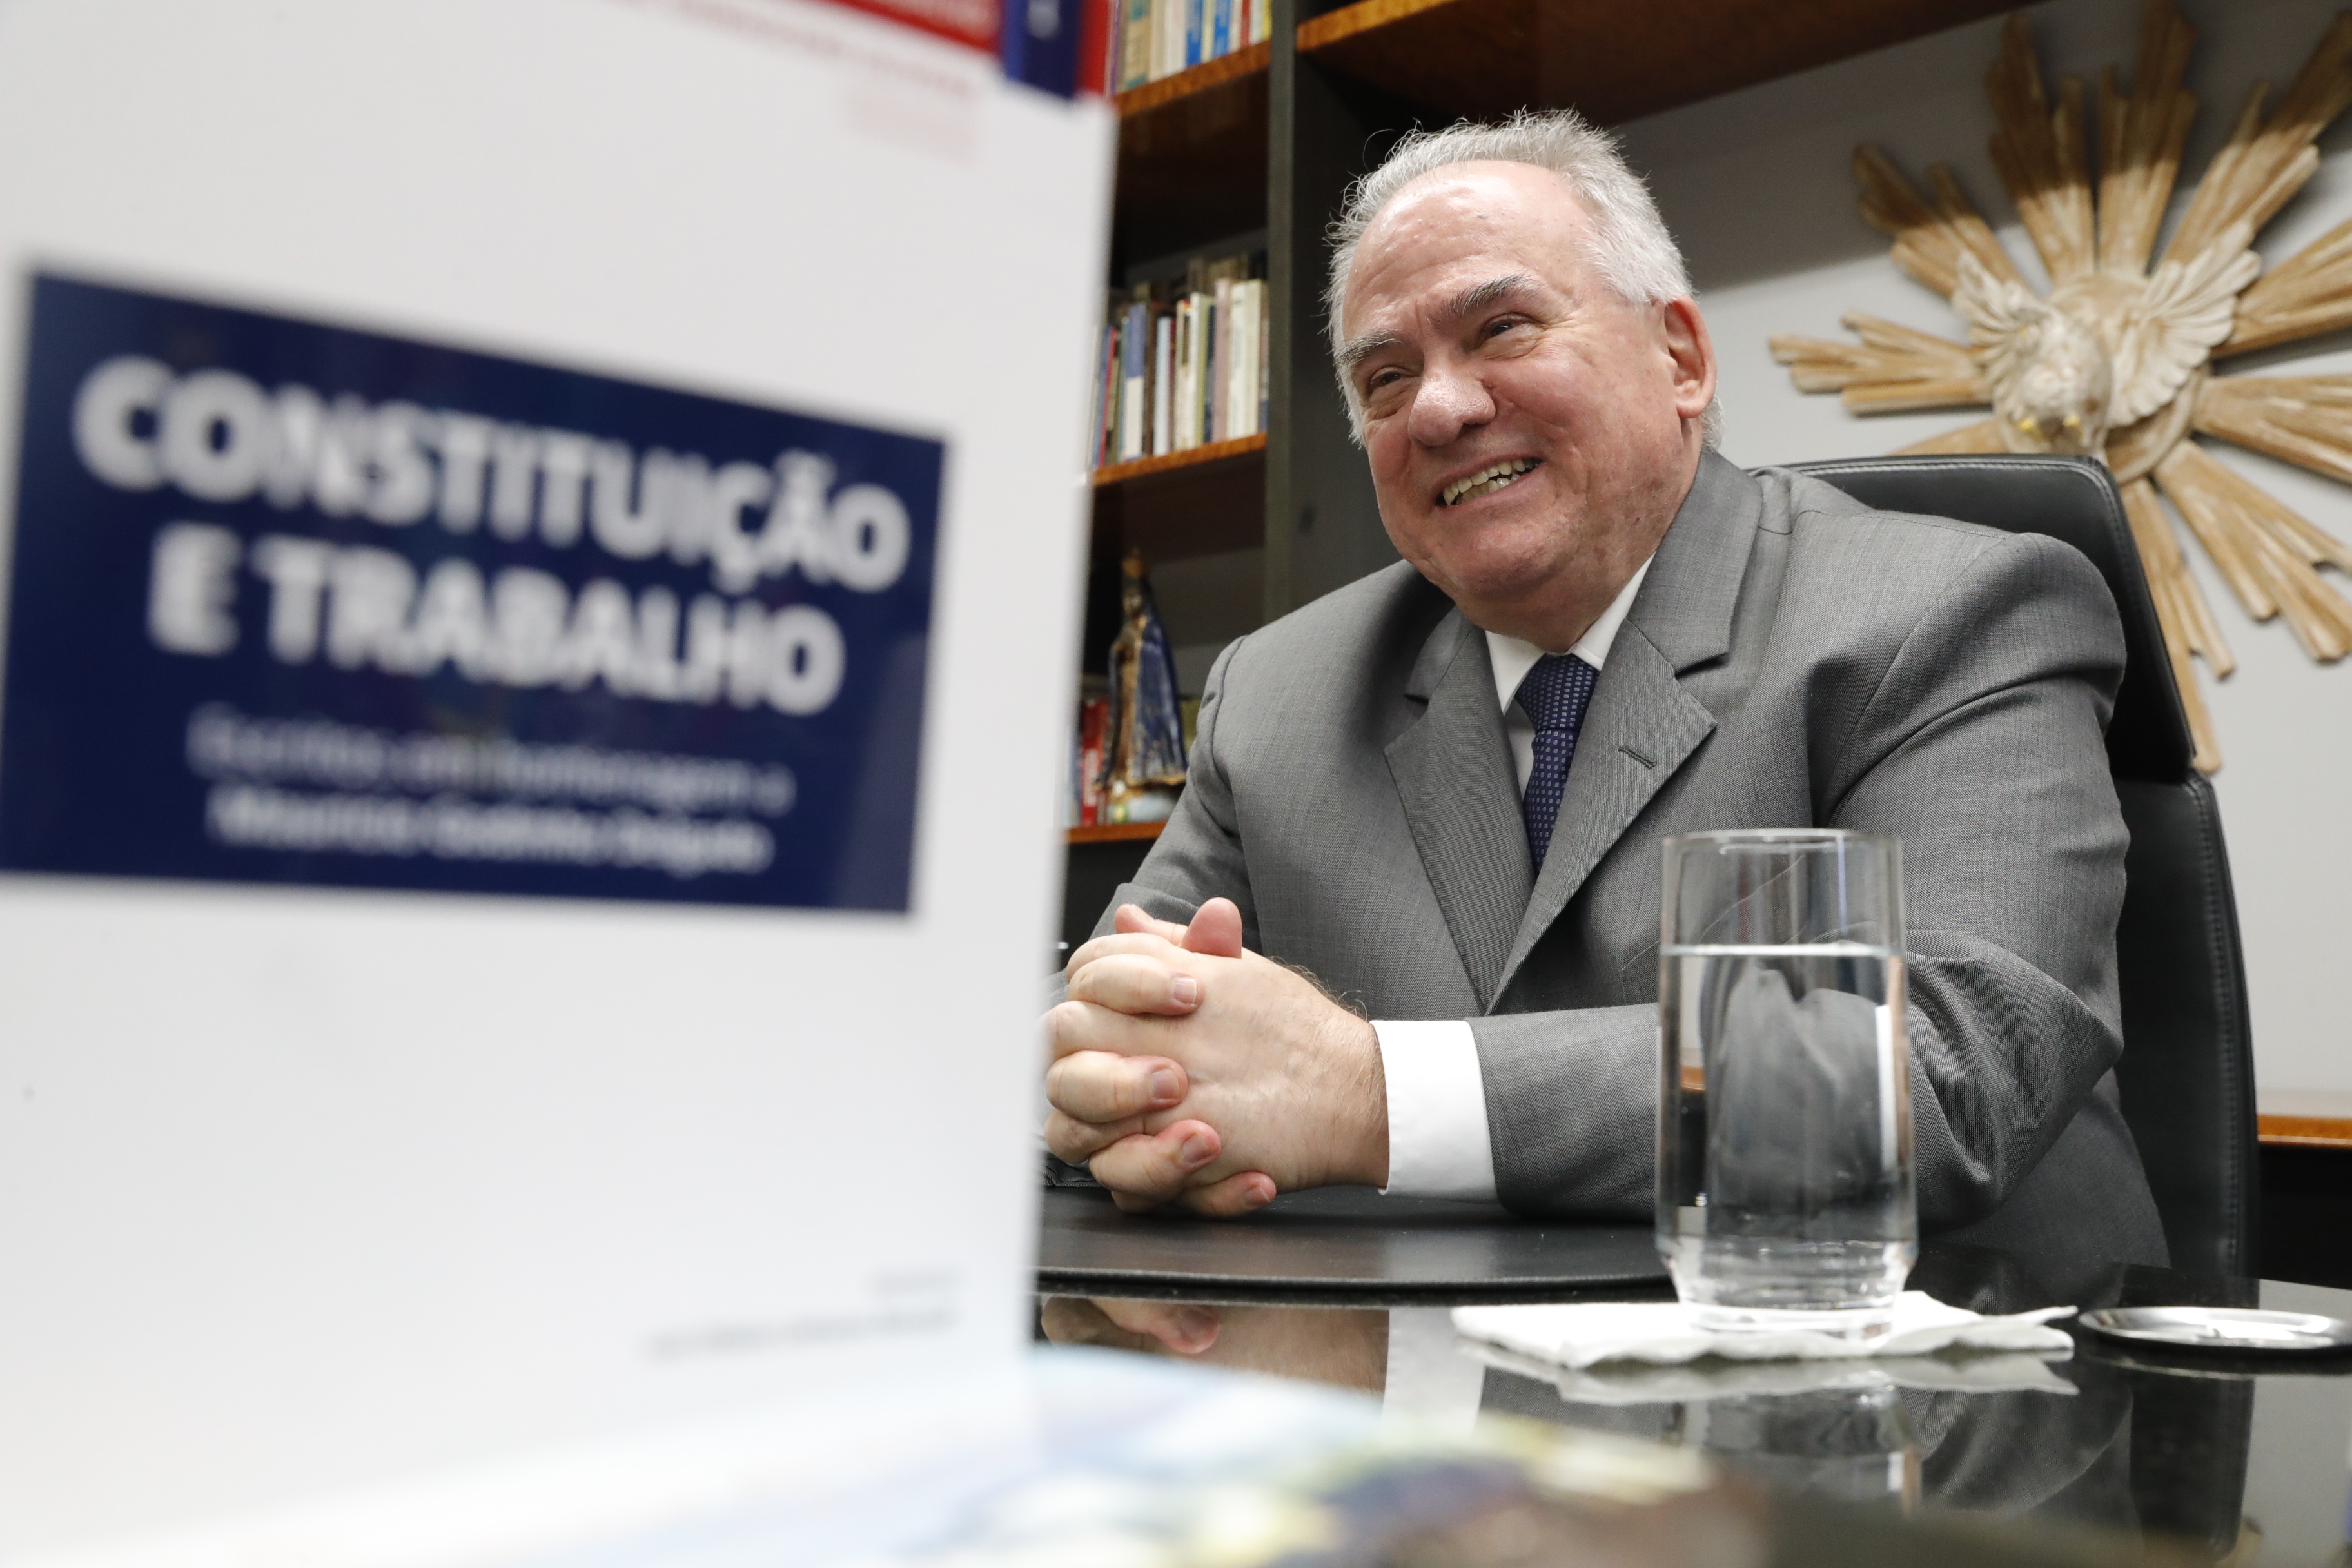 Ministro Maurício Godinho Delgado